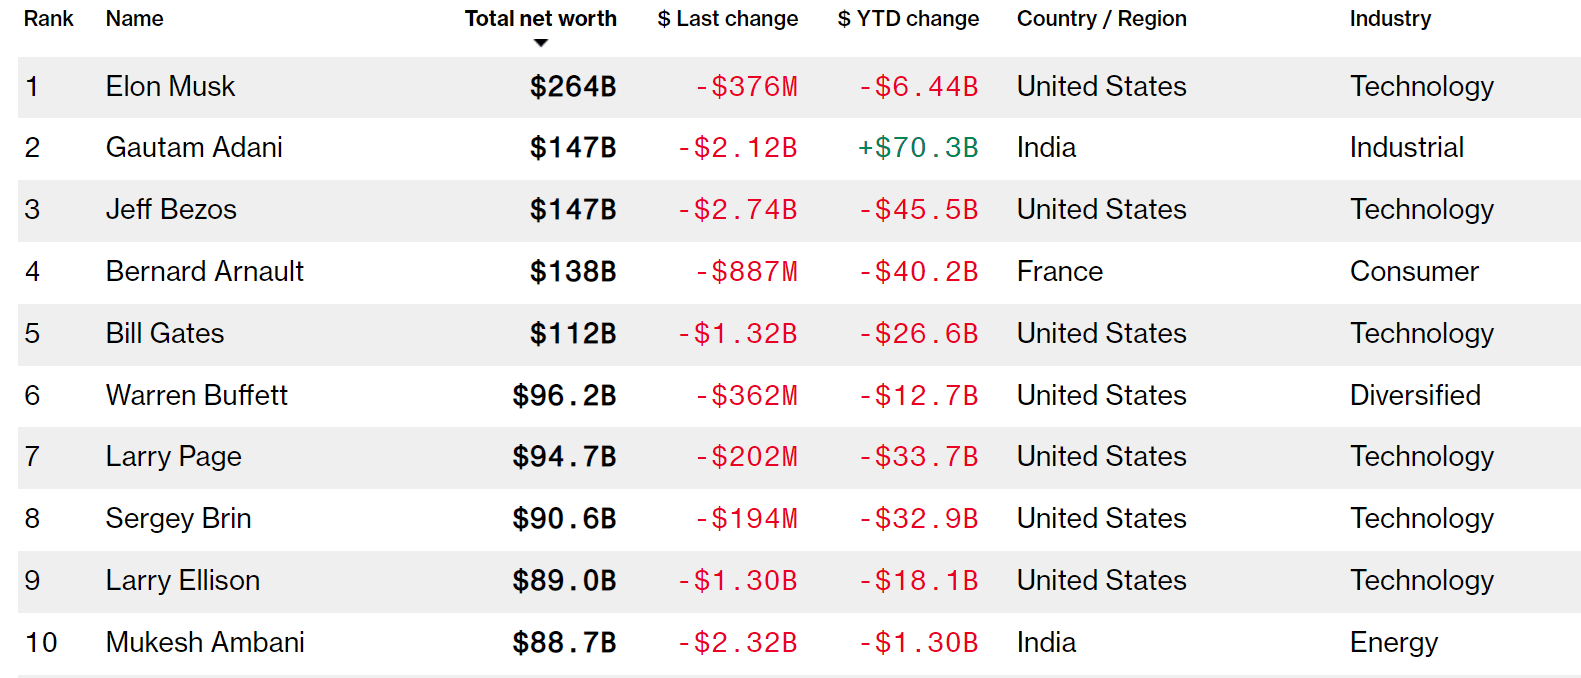 Багатший за Безоса: Гаутам Адані піднявся на друге місце у глобальному рейтингу мільярдерів